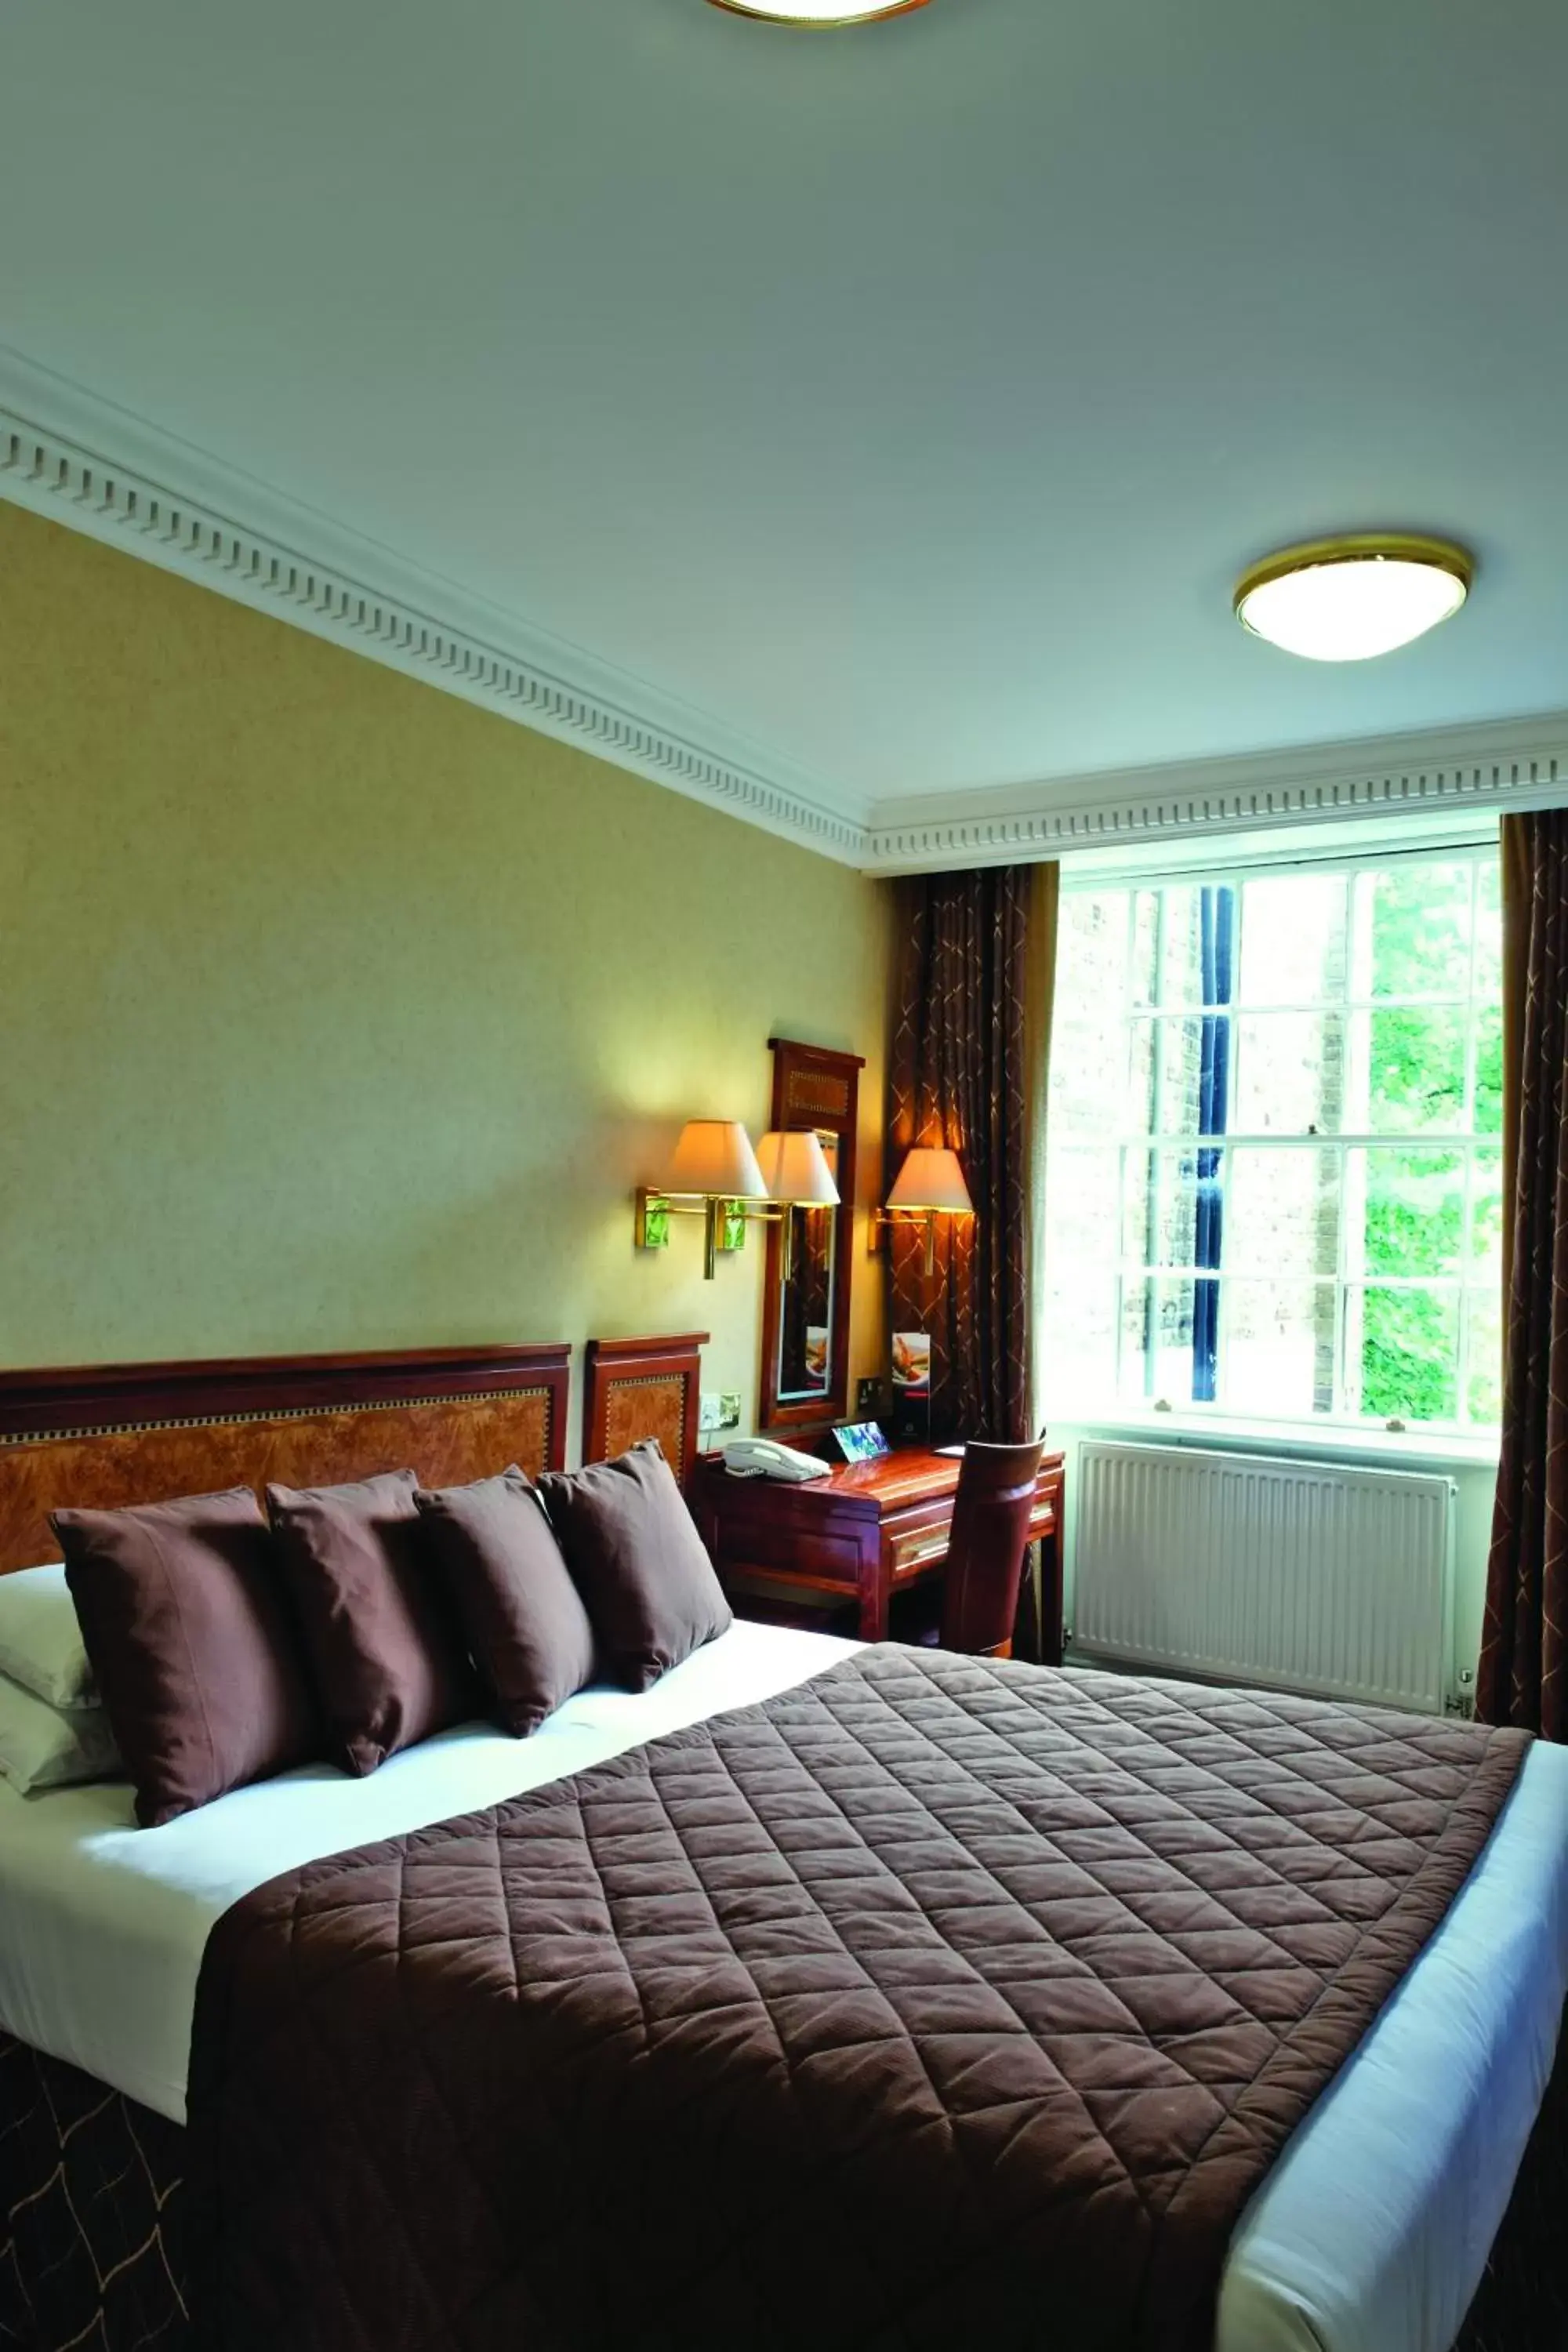 Bedroom, Room Photo in Grange Clarendon Hotel